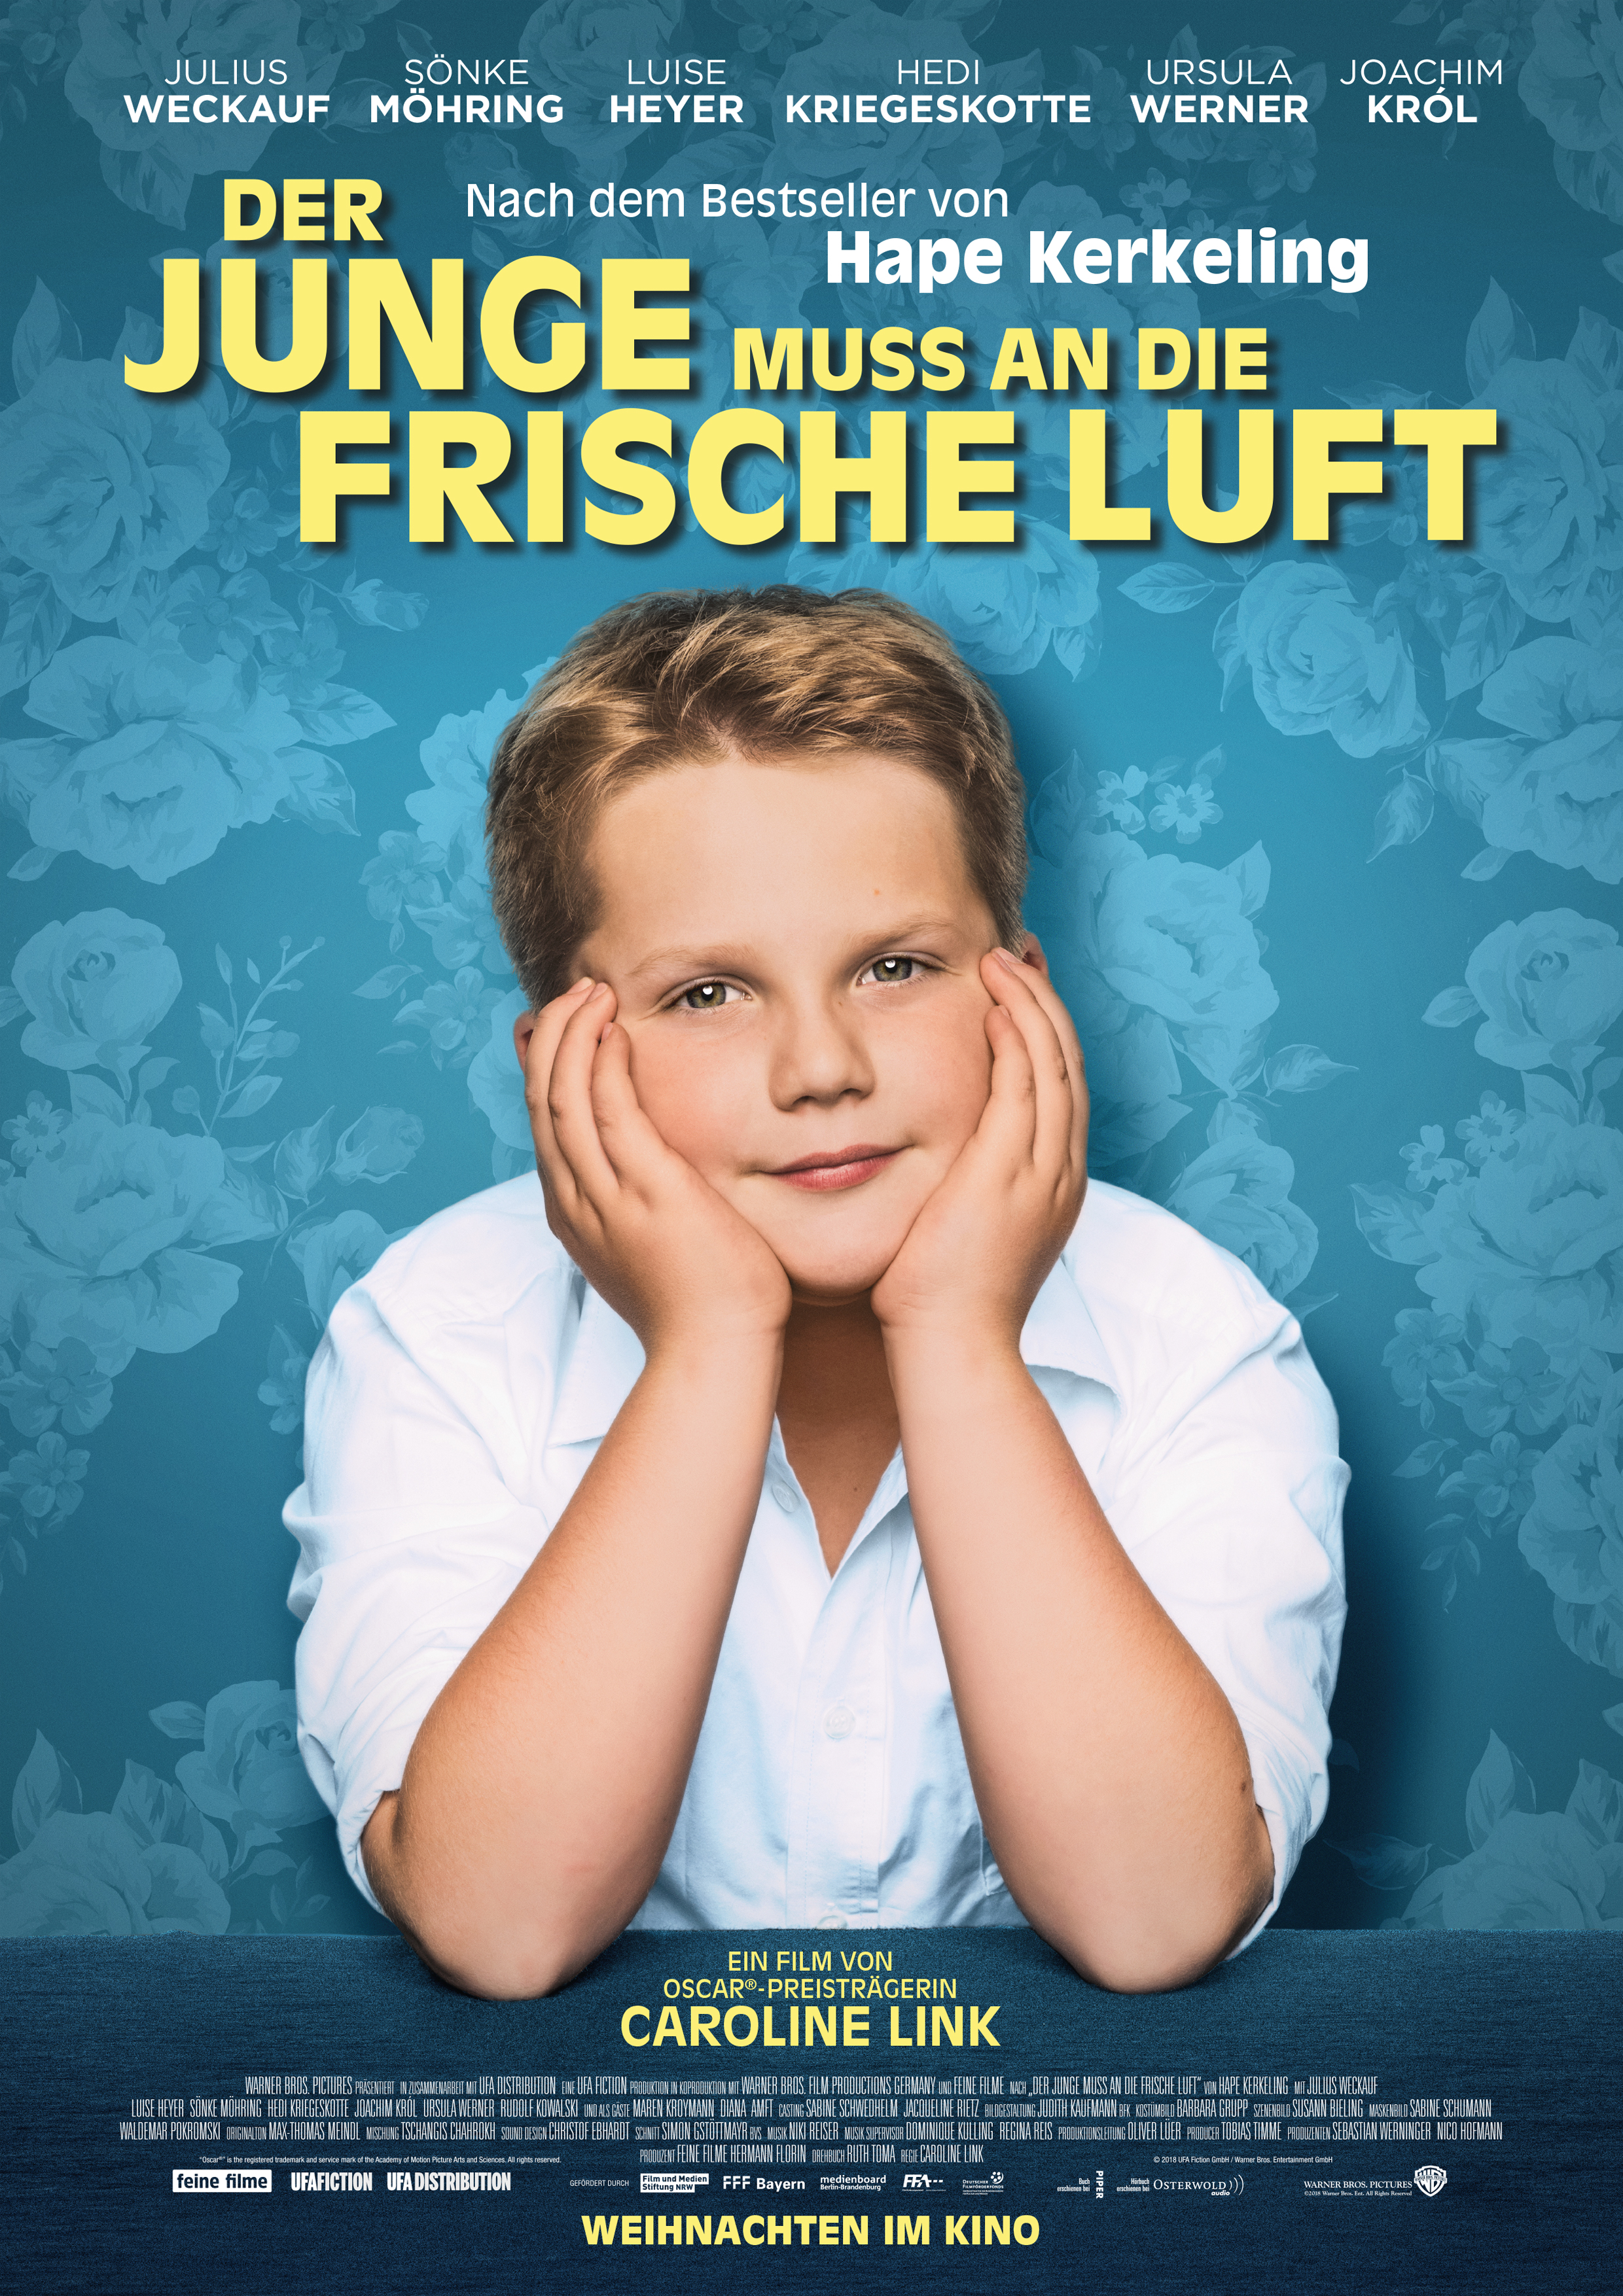 Filmplakat "DER JUNGE MUSS AN DIE FRISCHE LUFT"